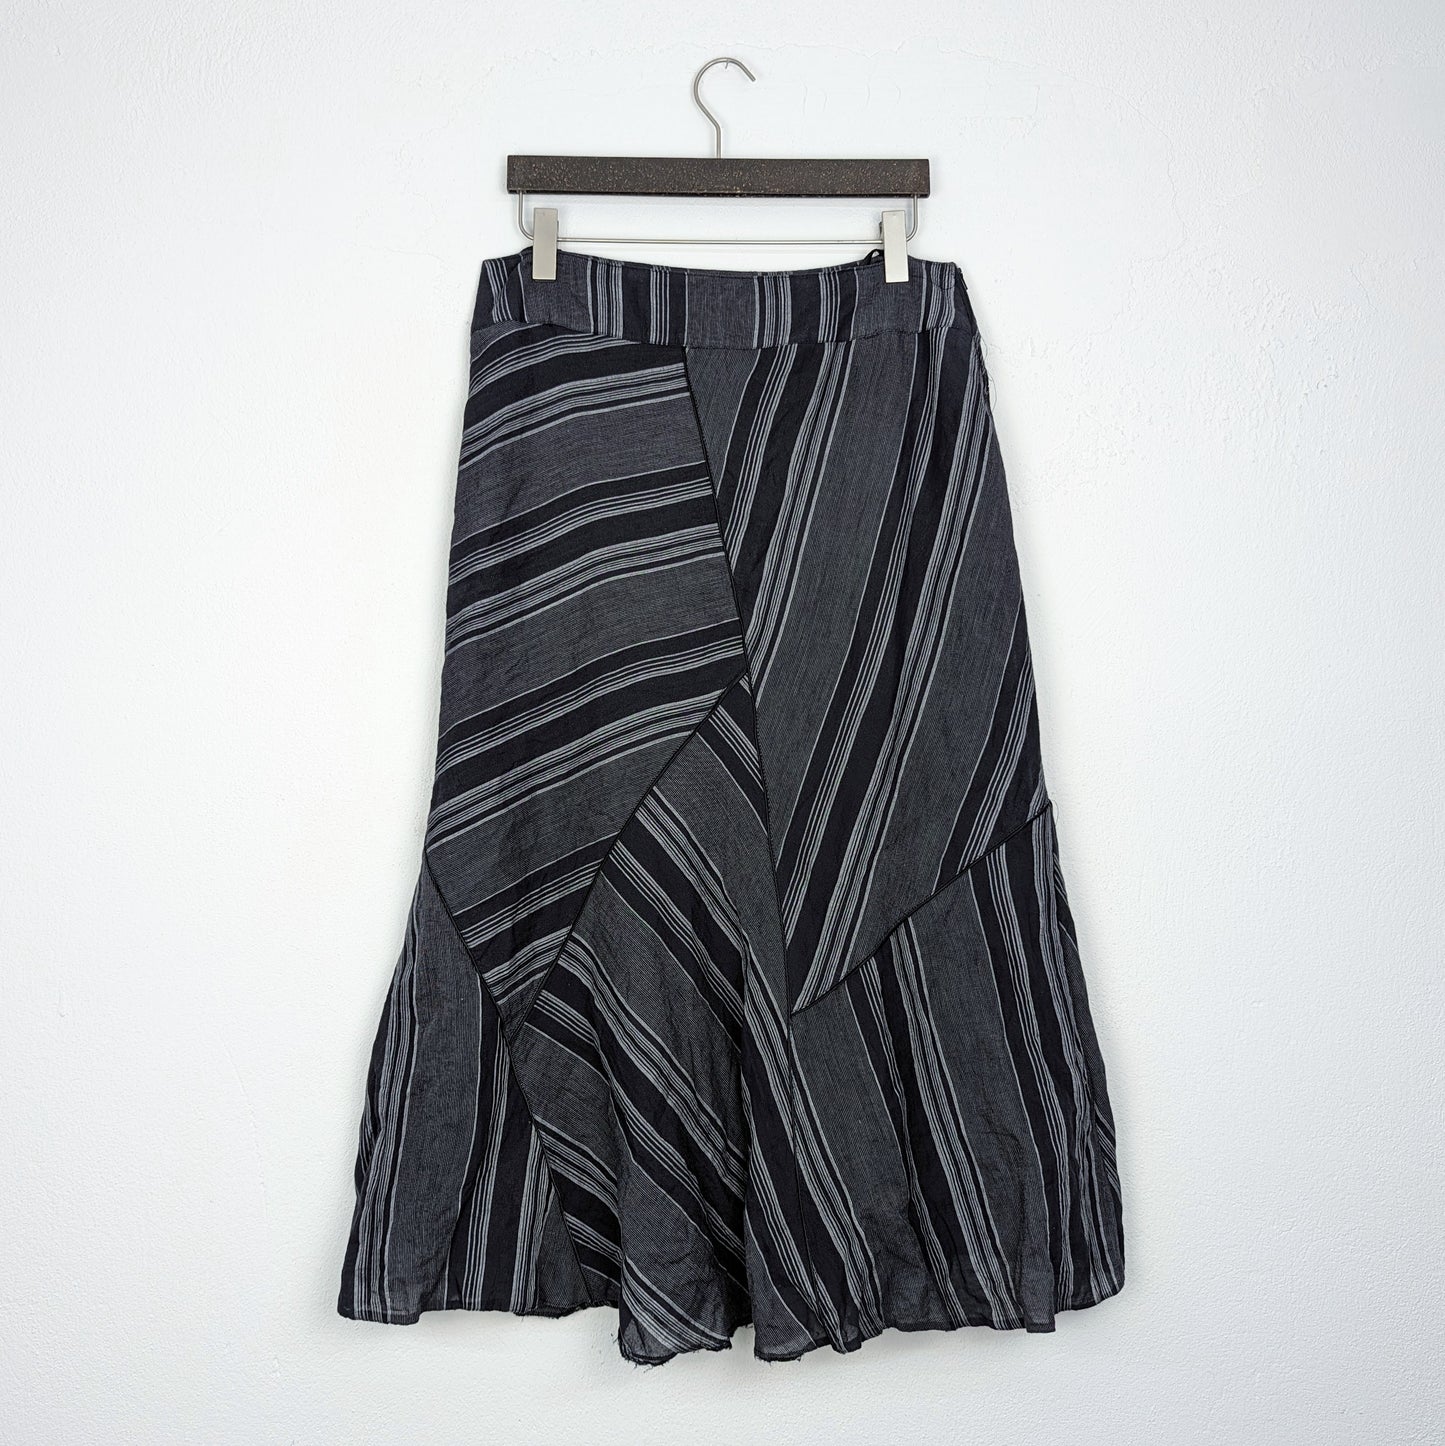 ADAGIO 90s Style Midi Skirt (M-L)